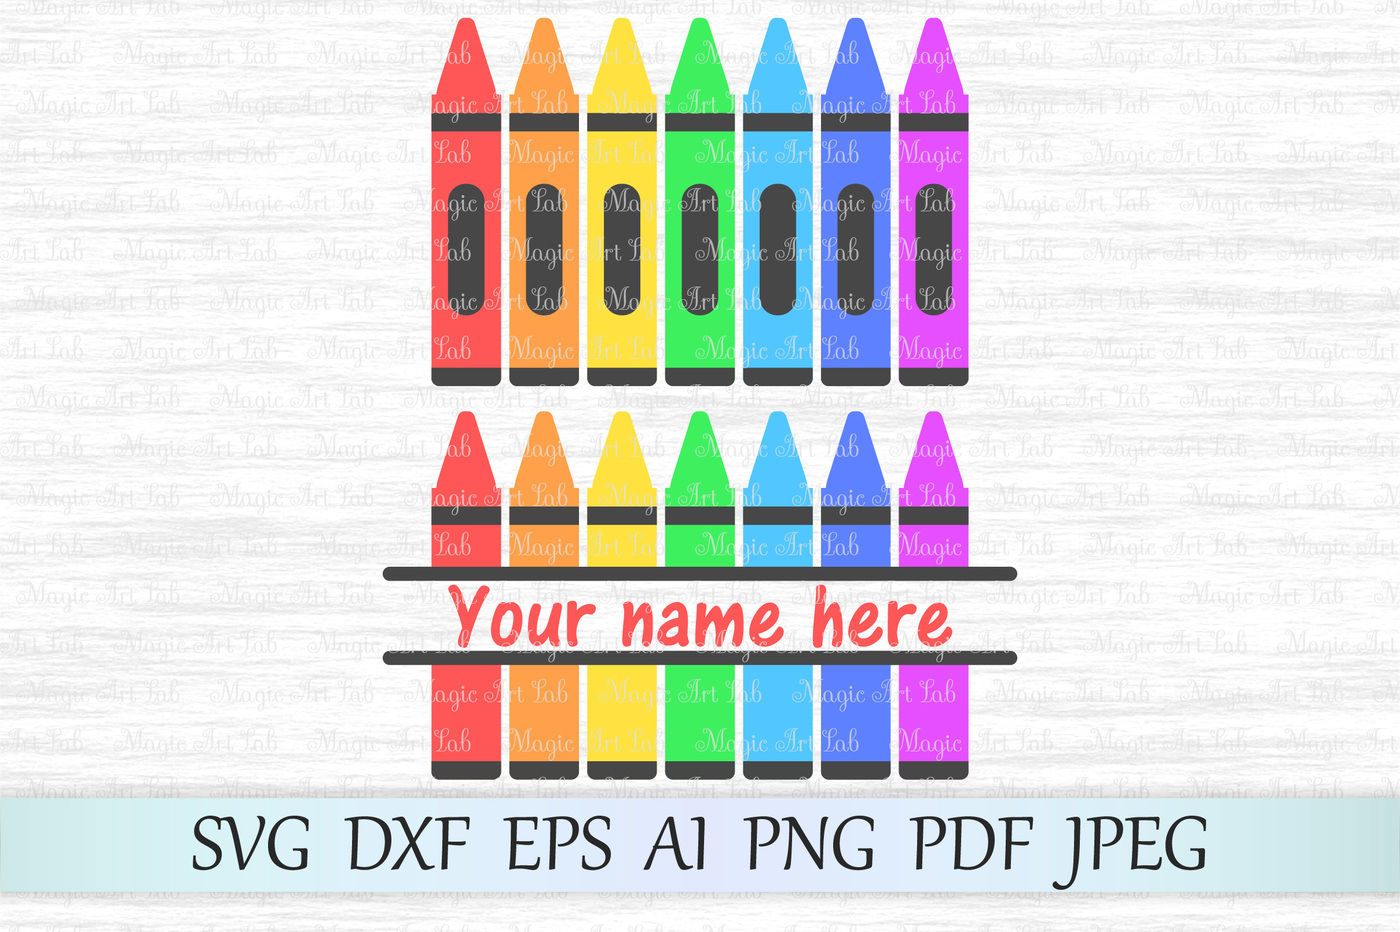 Crayon SVG File Free